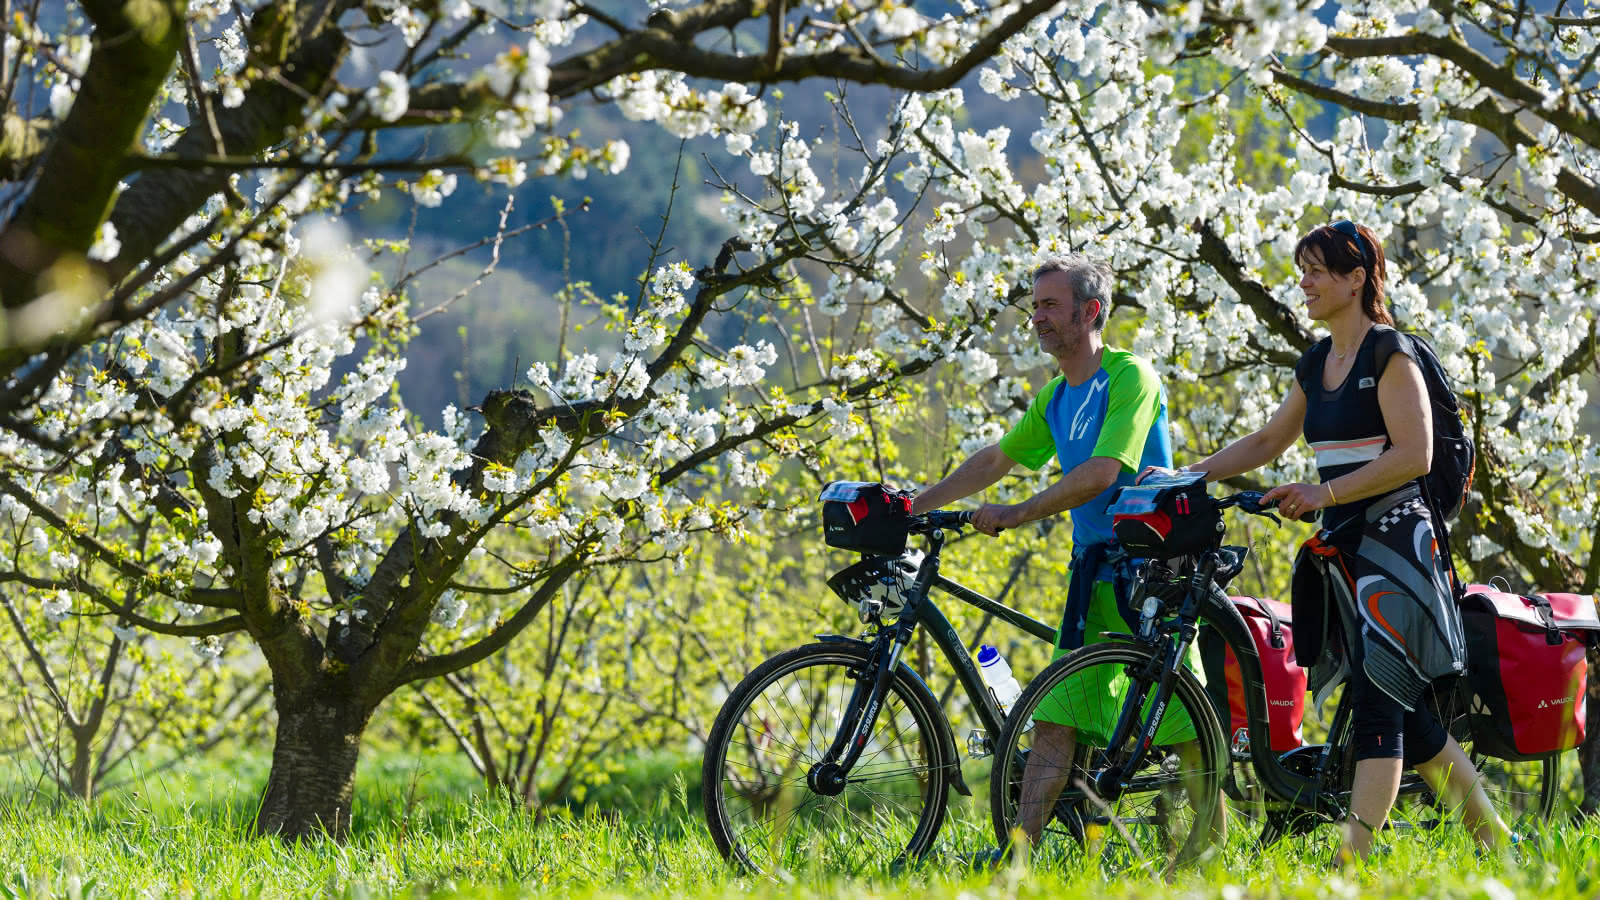 Cyclotourisme en région Auvergne Rhône-Alpes (©CRT Aura)